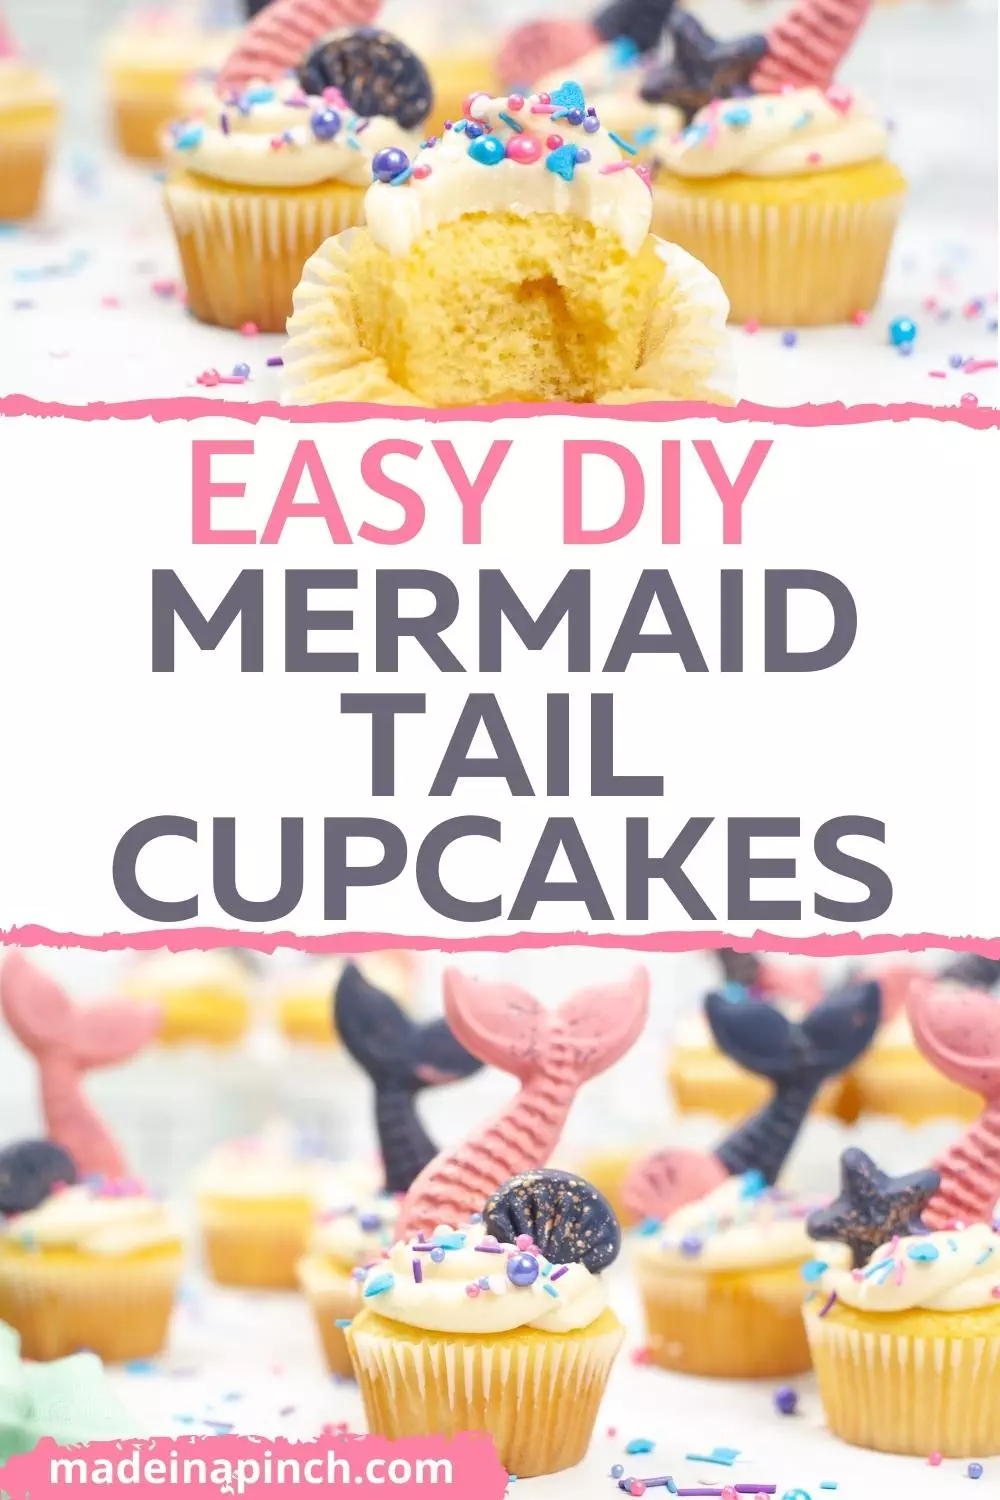 DIY speckled mermaid cupcakes pin image